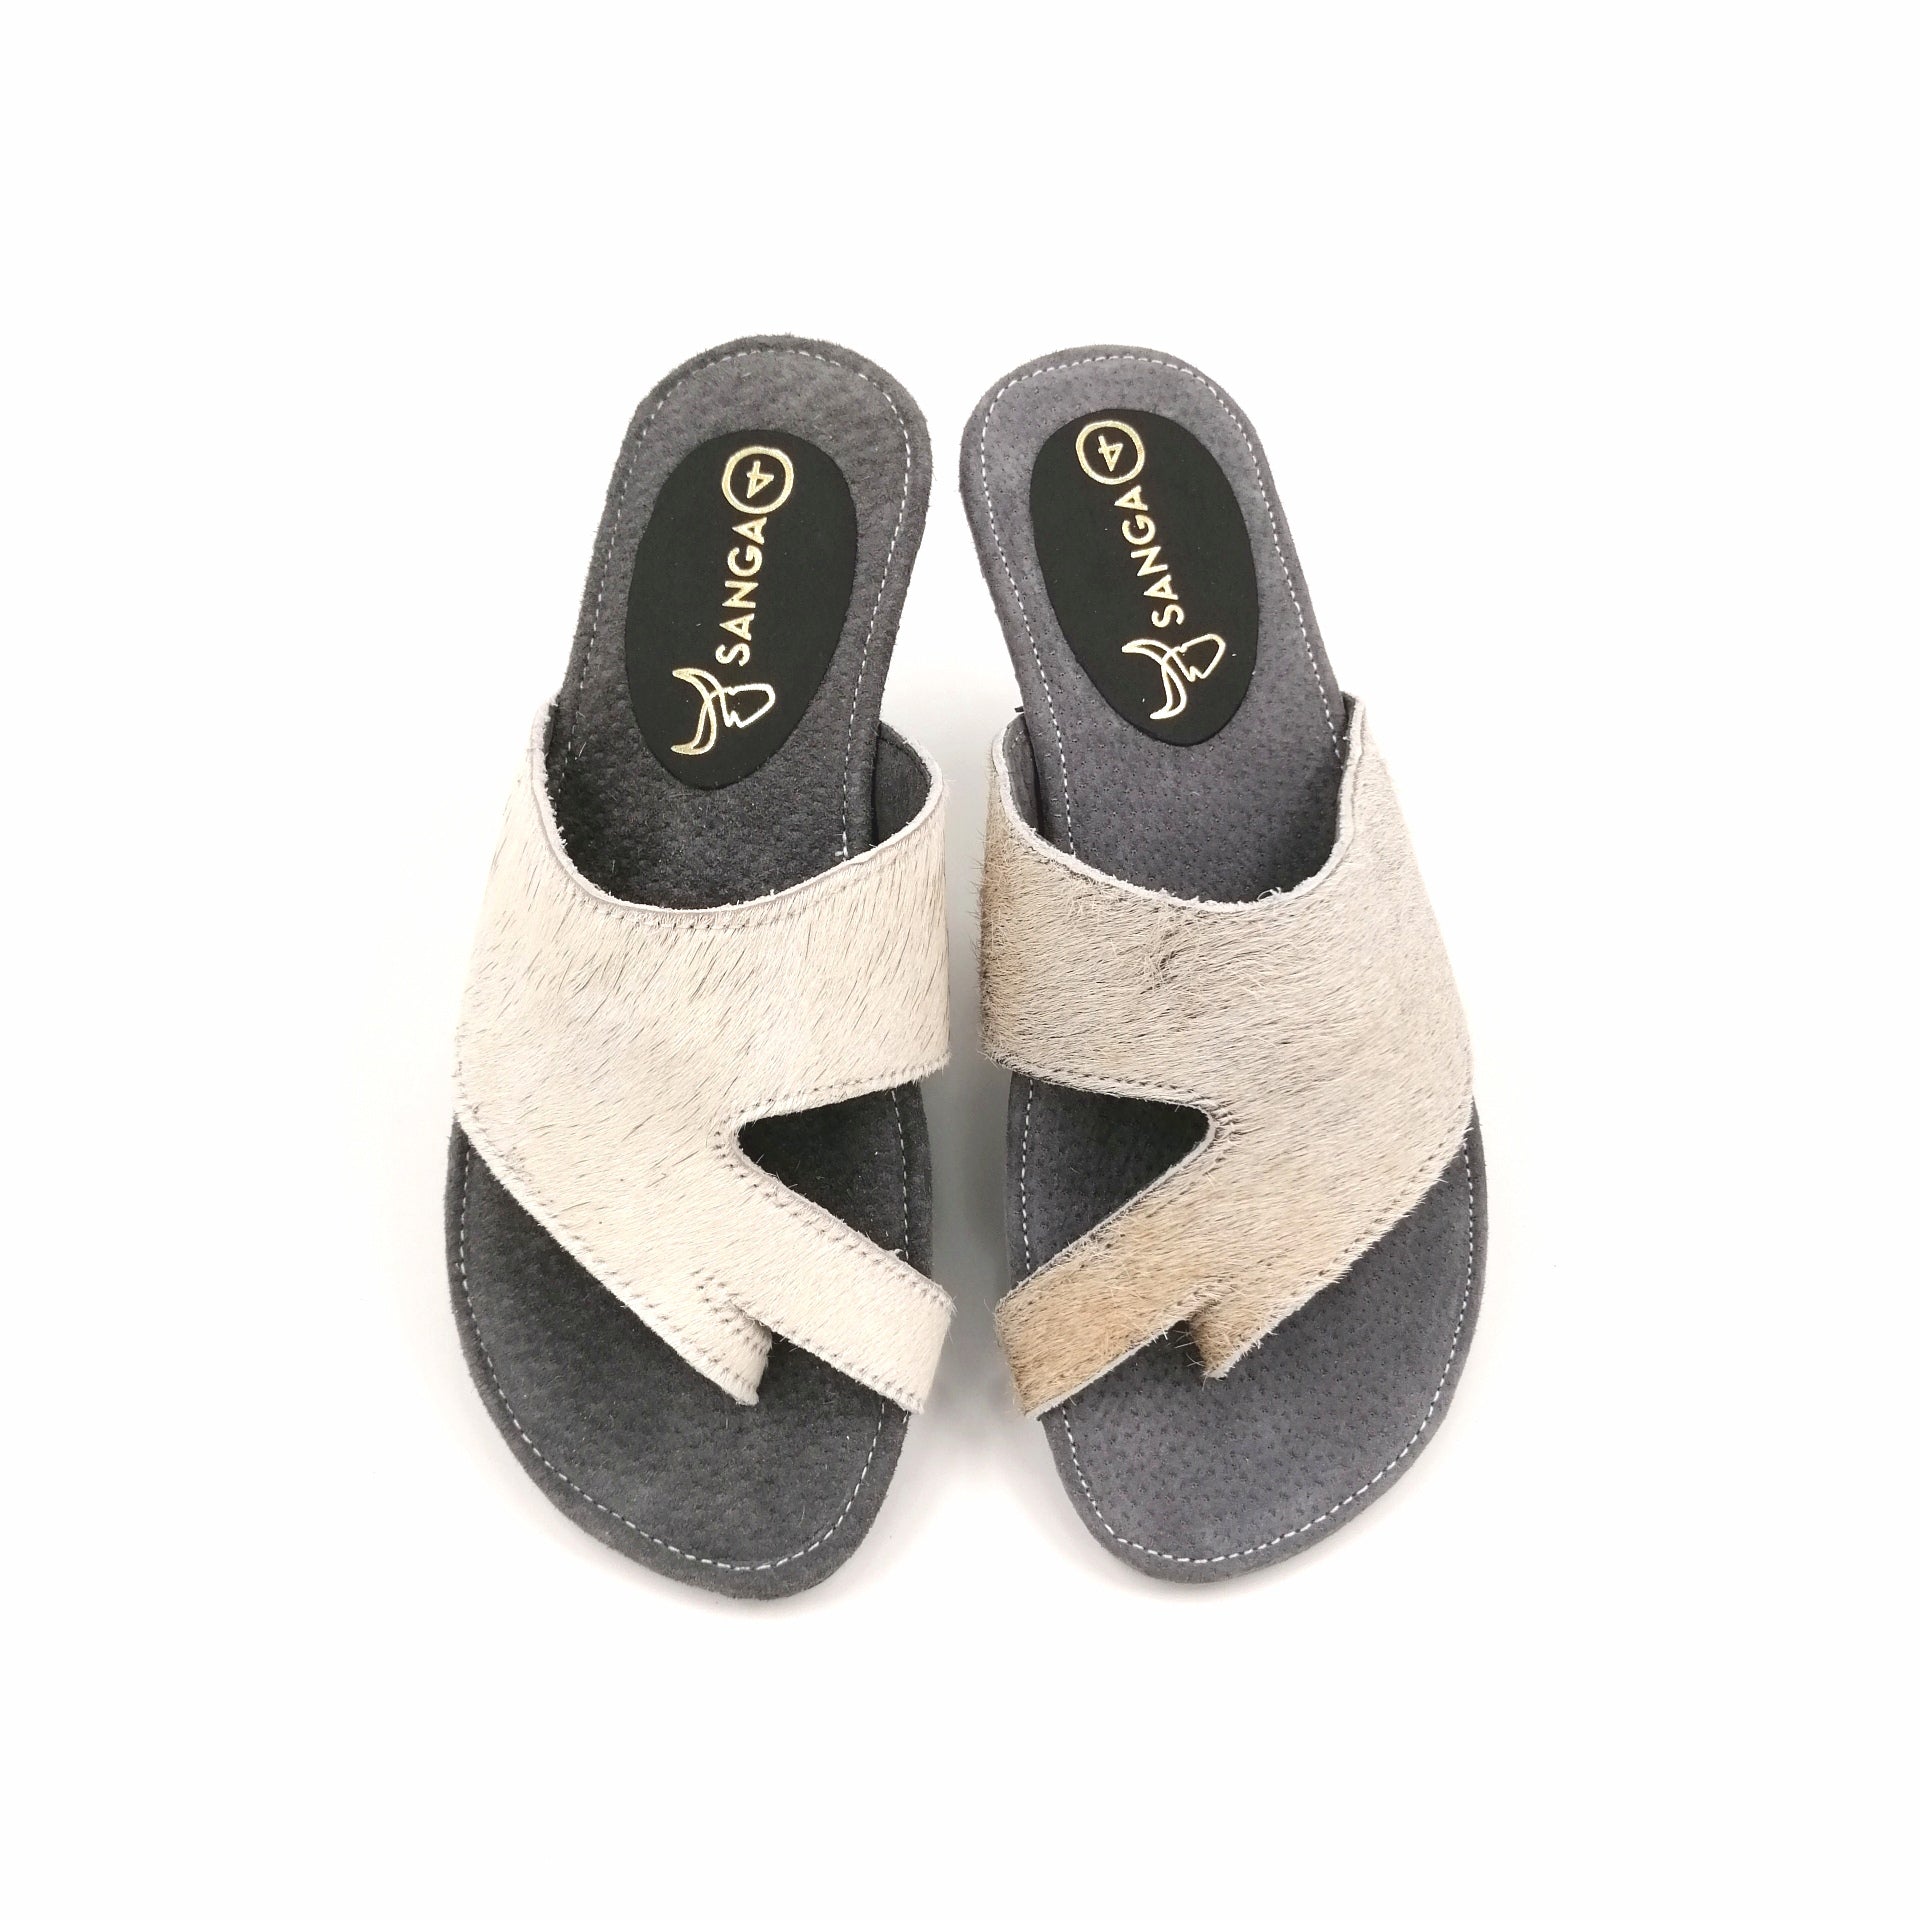 Sandals - SC20-SAN04-06 - Size 4